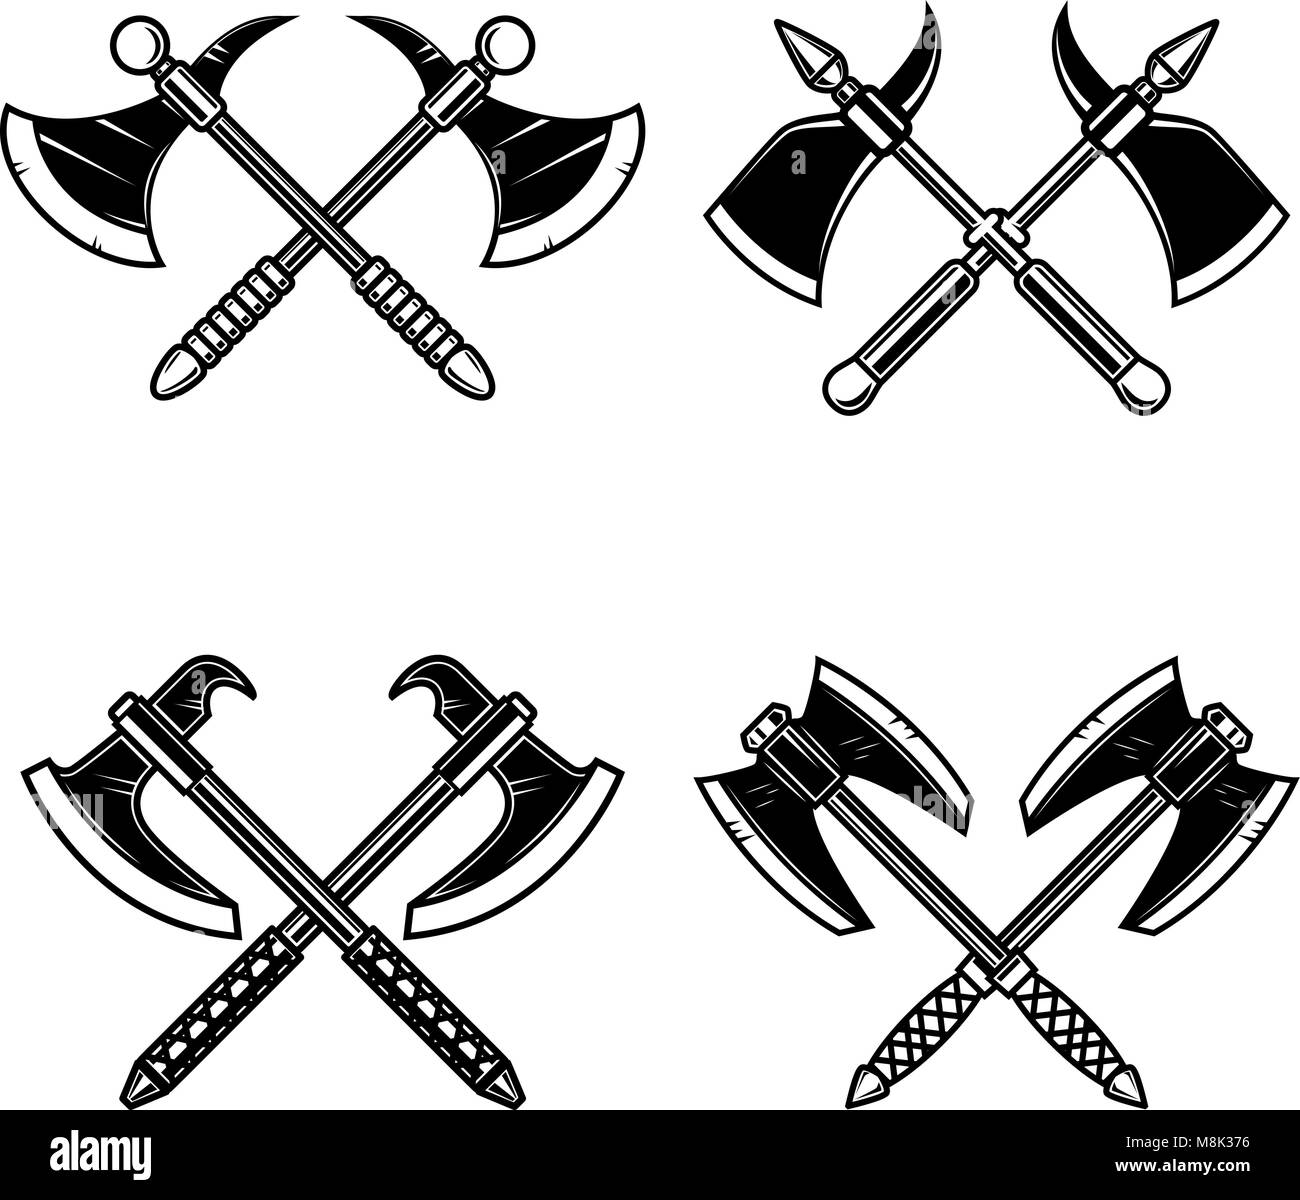 Einstellen der gekreuzten mittelalterlichen ax auf weißem Hintergrund. Design Element für Logo, Label, Emblem, sign. Vector Illustration Stock Vektor